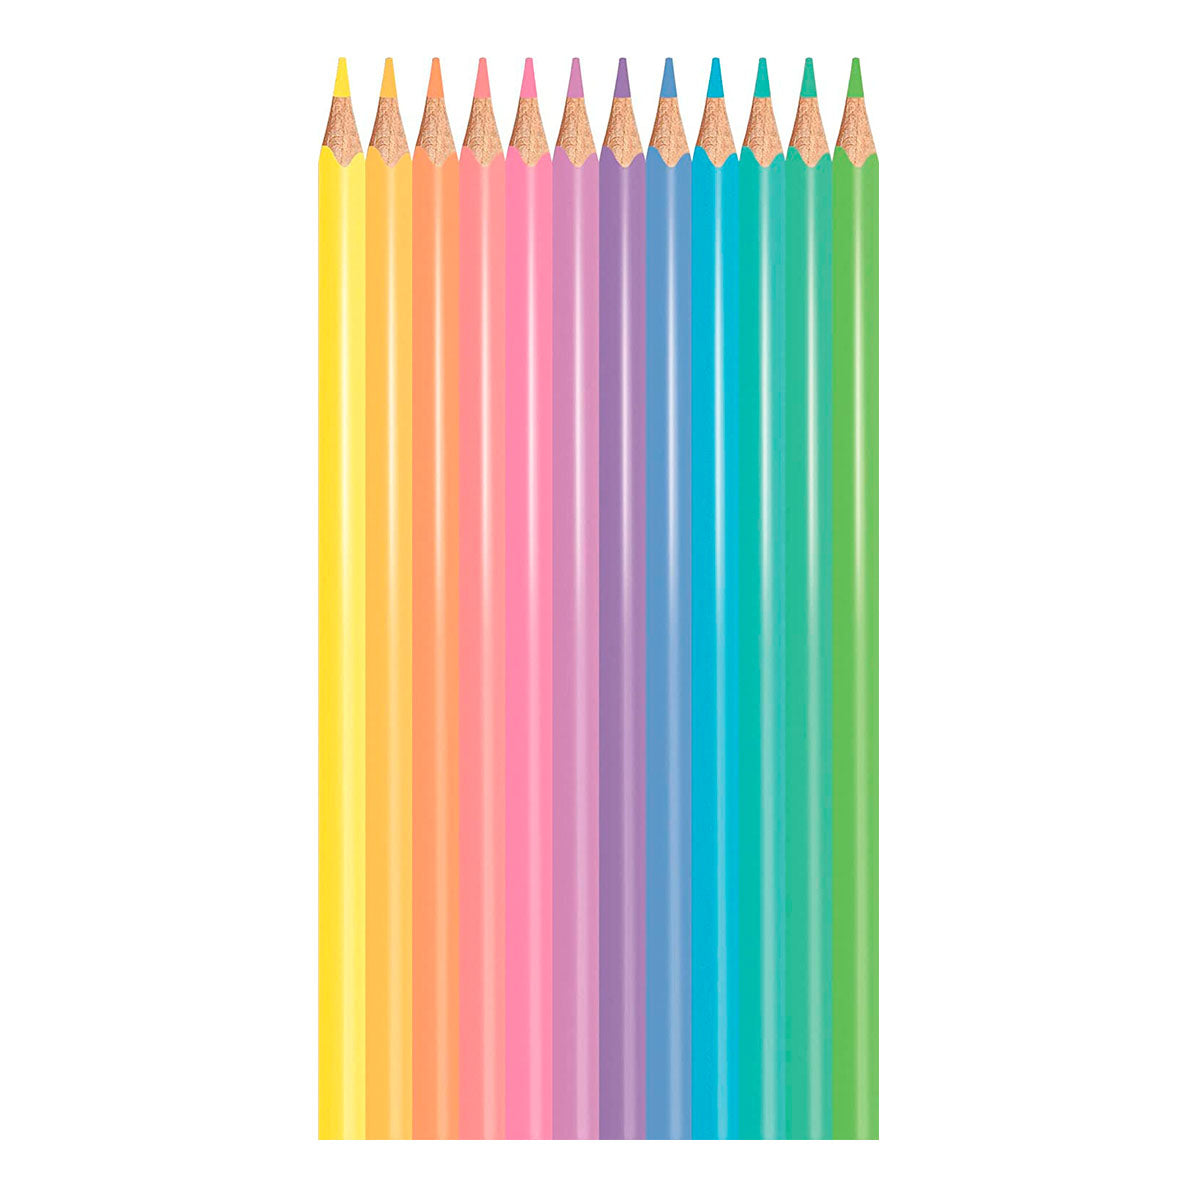 MAPED Color'Peps - Caja de 12 Lápices de Colores en Tonos Pastel